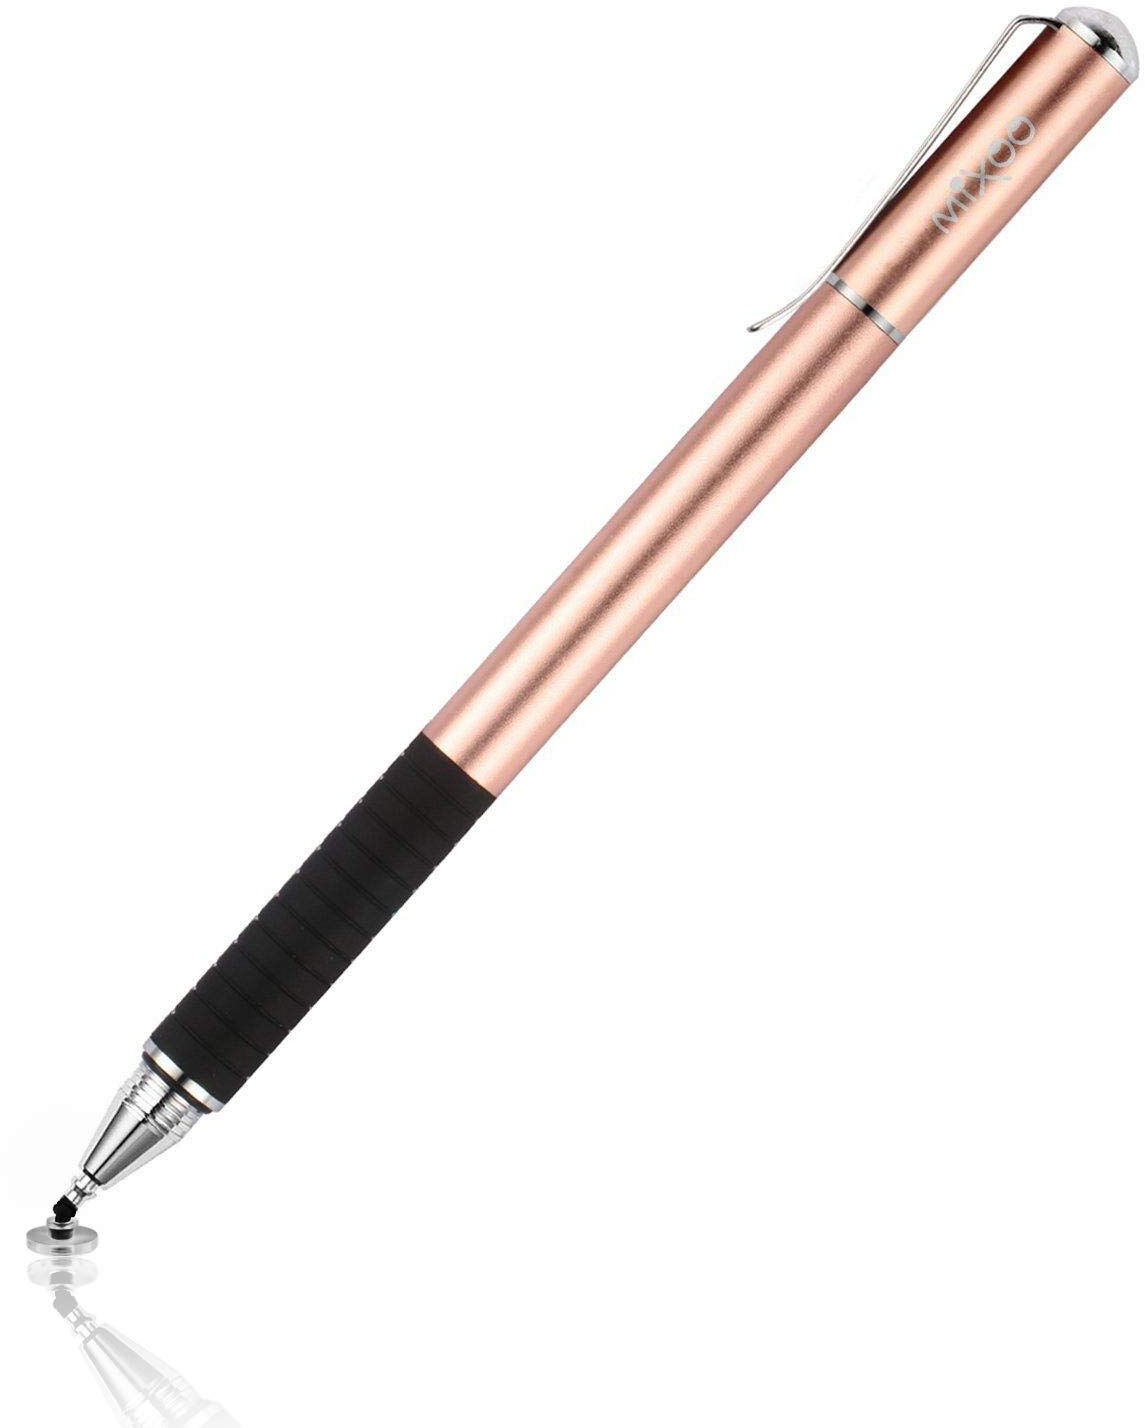 Mixoo Stift Präzision Disc Eingabestift Touchstift Stylus 2 in 1 Kapazitive Touchscreen Stift, kompatibel für Smartphones &Tablets (Roségold)